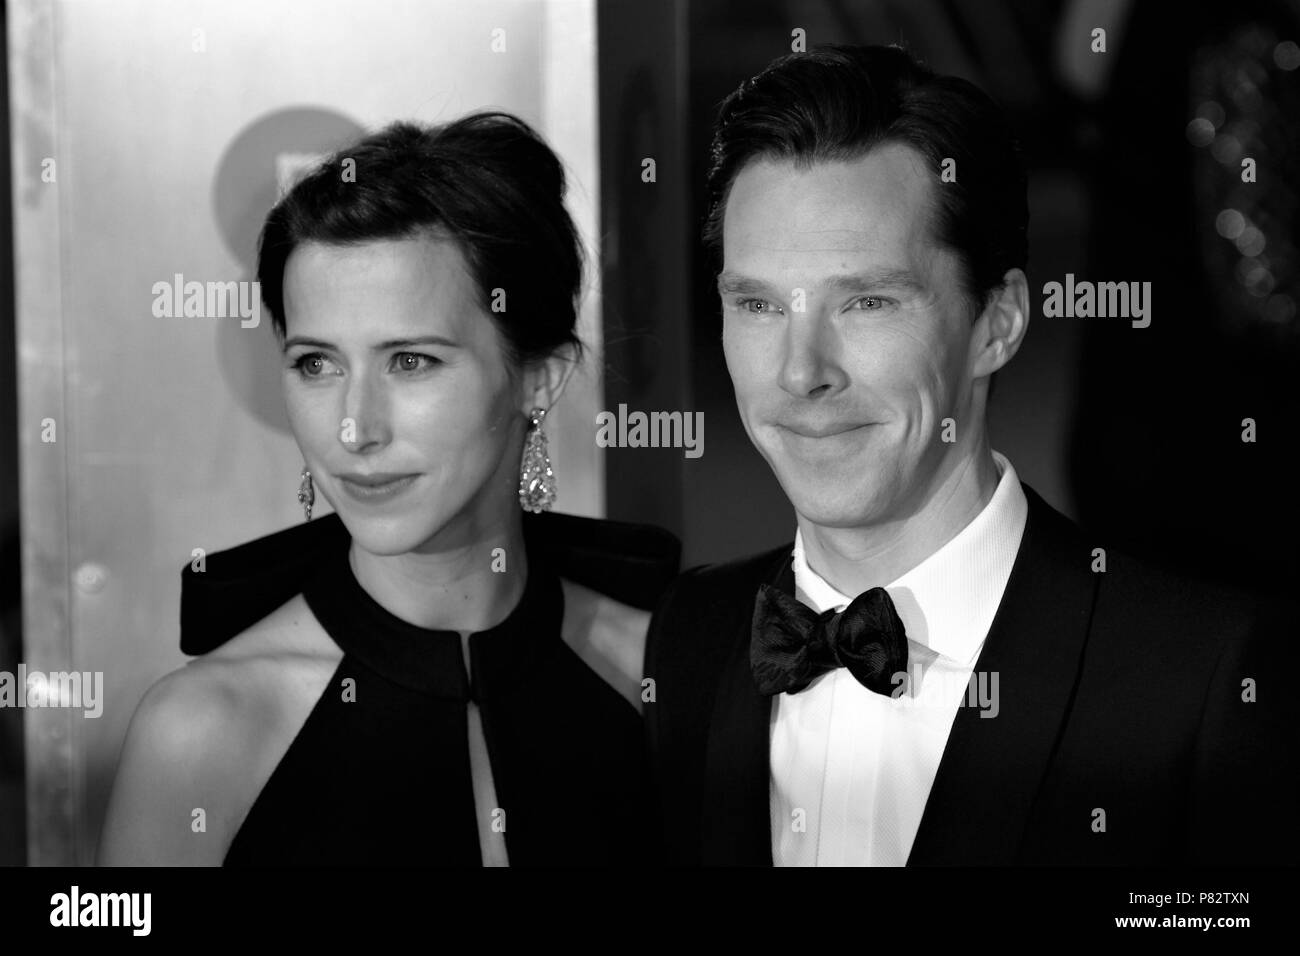 Londres - DEC 08, 2015 : ( Image ) monochrome altérées à Sophie Hunter et Benedict Cumberbatch assister à l'EE British Academy Film Awards au Royal Opera House de Londres Banque D'Images